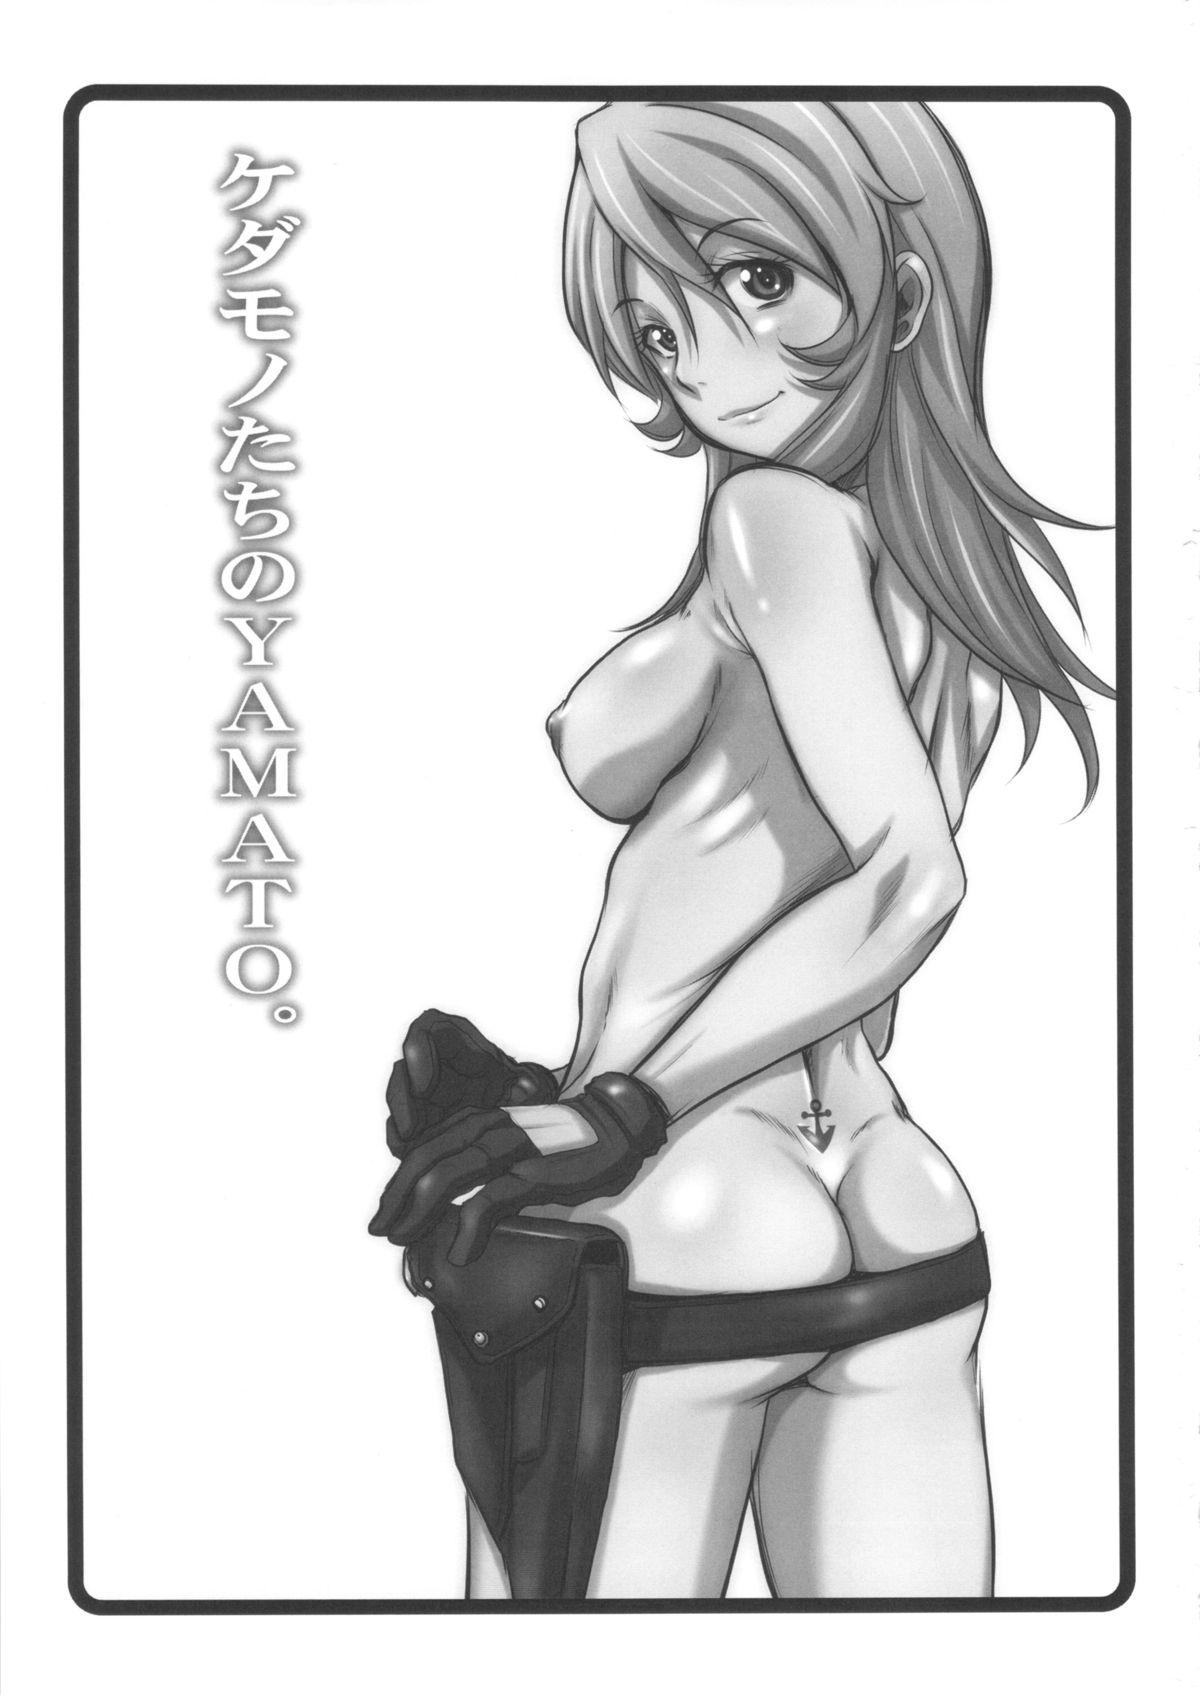 Lez Fuck Kedamono-tachi no YAMATO. - Space battleship yamato Gang - Page 2